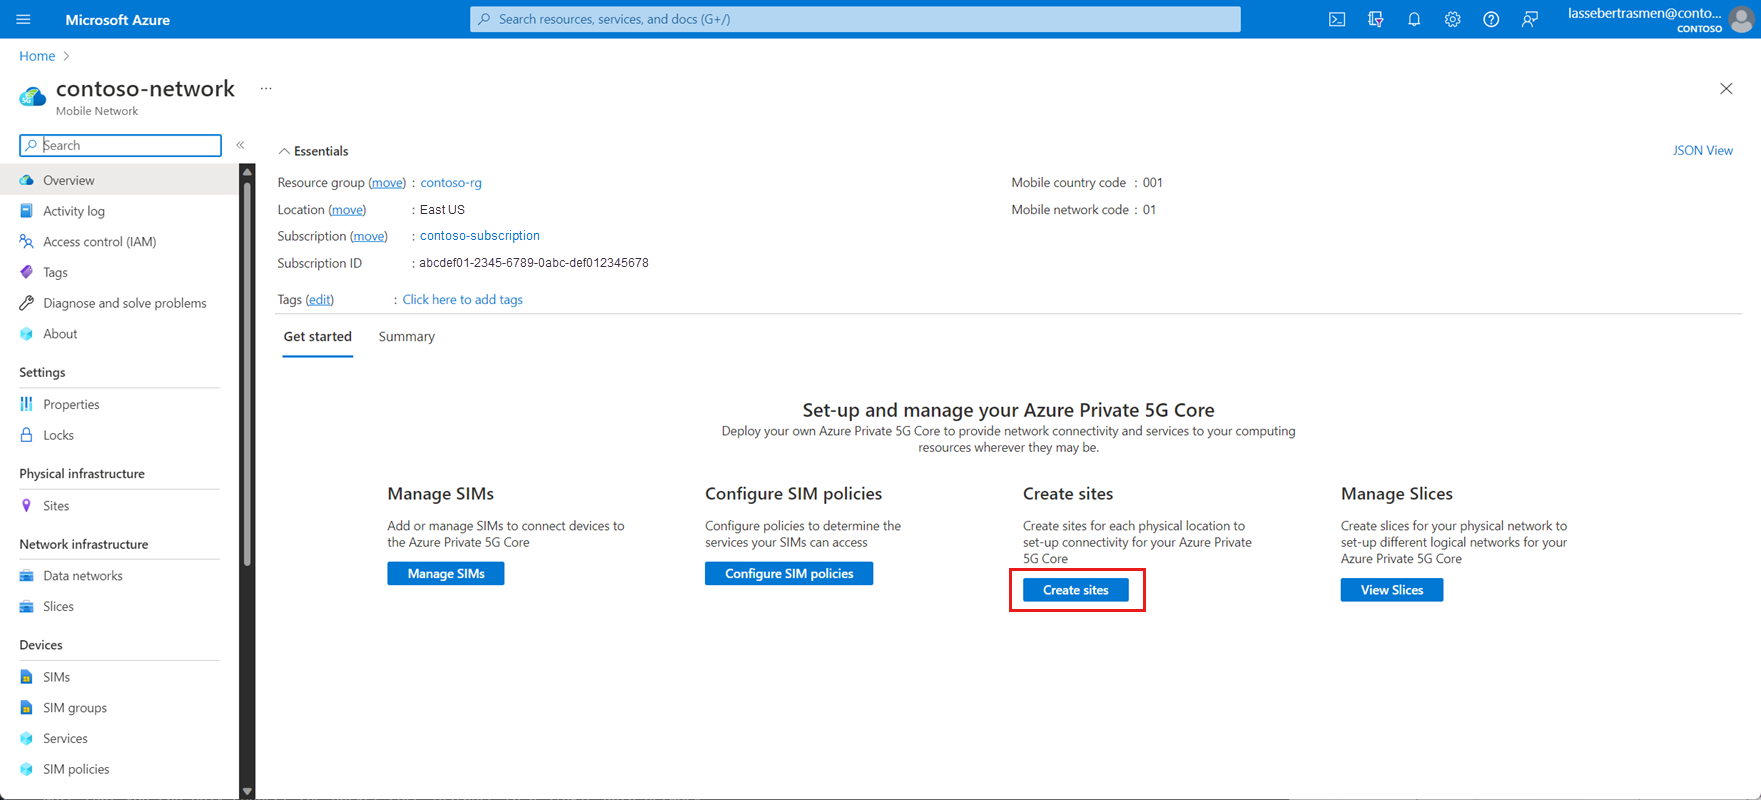 Captura de tela do portal do Azure mostrando a guia Introdução, com o botão Criar sites em destaque.